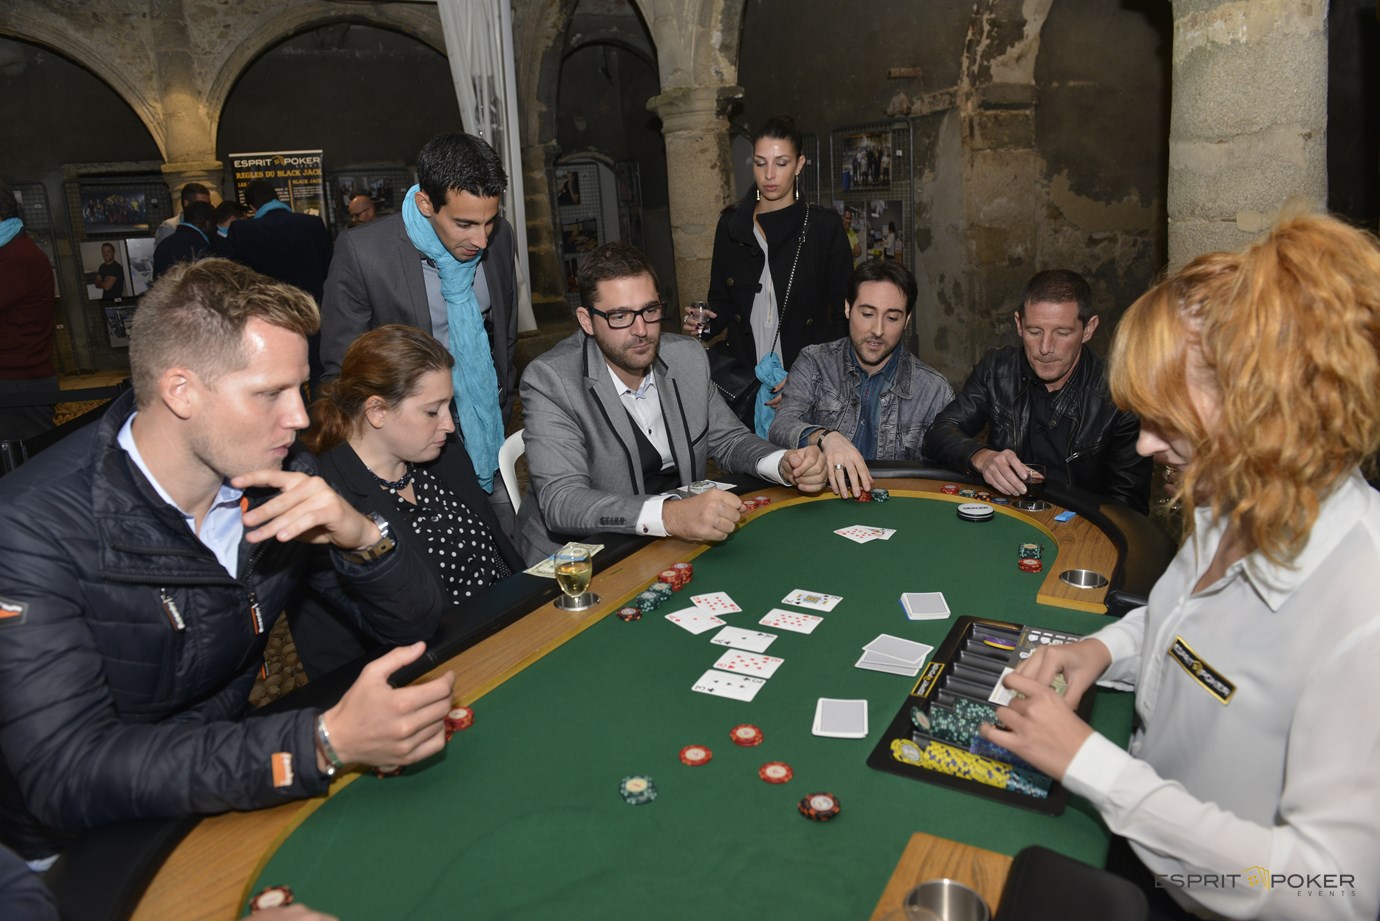 jouez au poker à valence pour une soirée entreprise